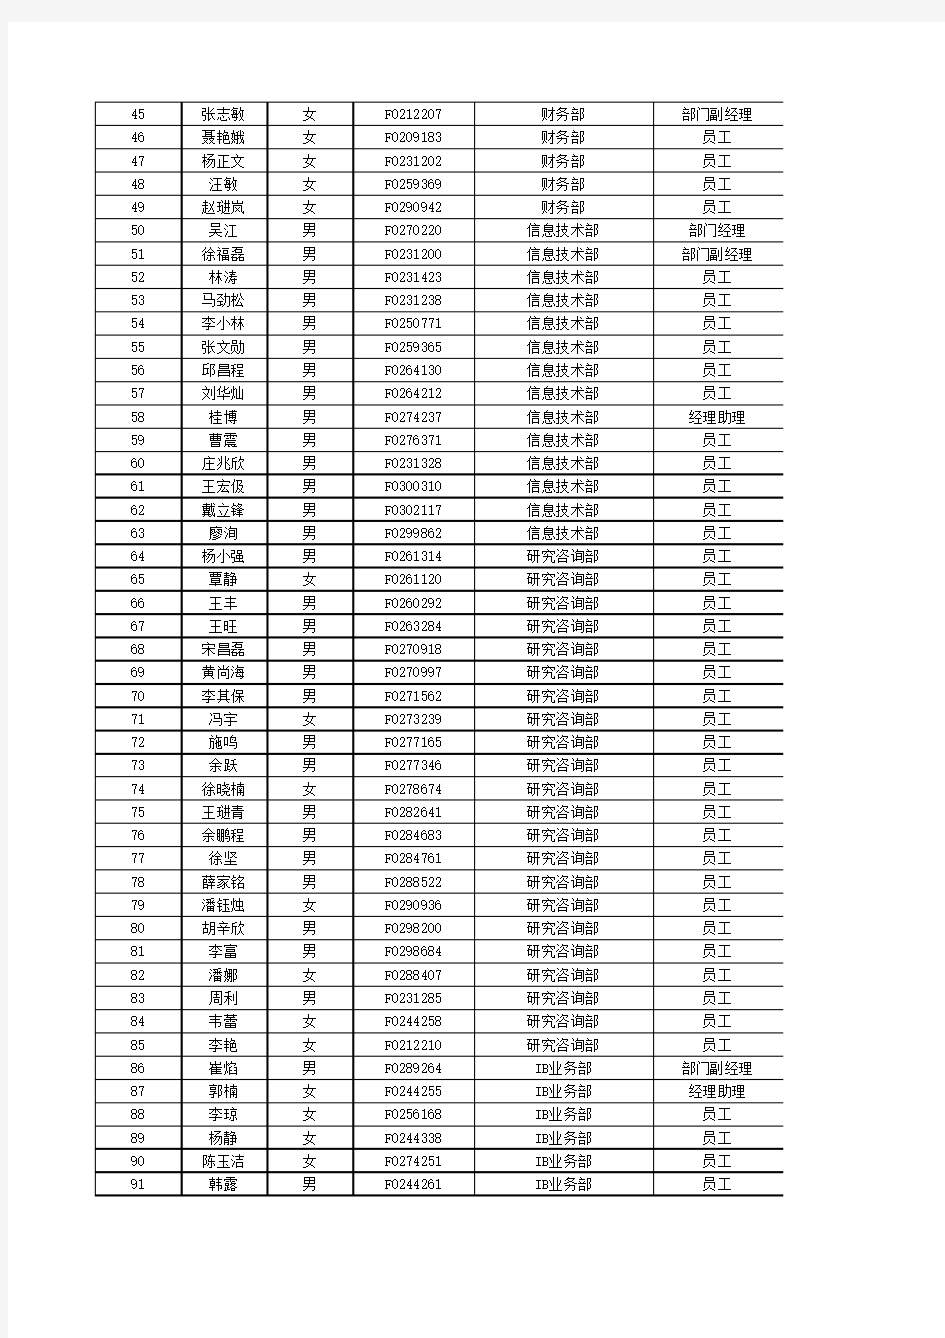 长江期货人员信息公示表(更新日期：2014年8月)xls-201408